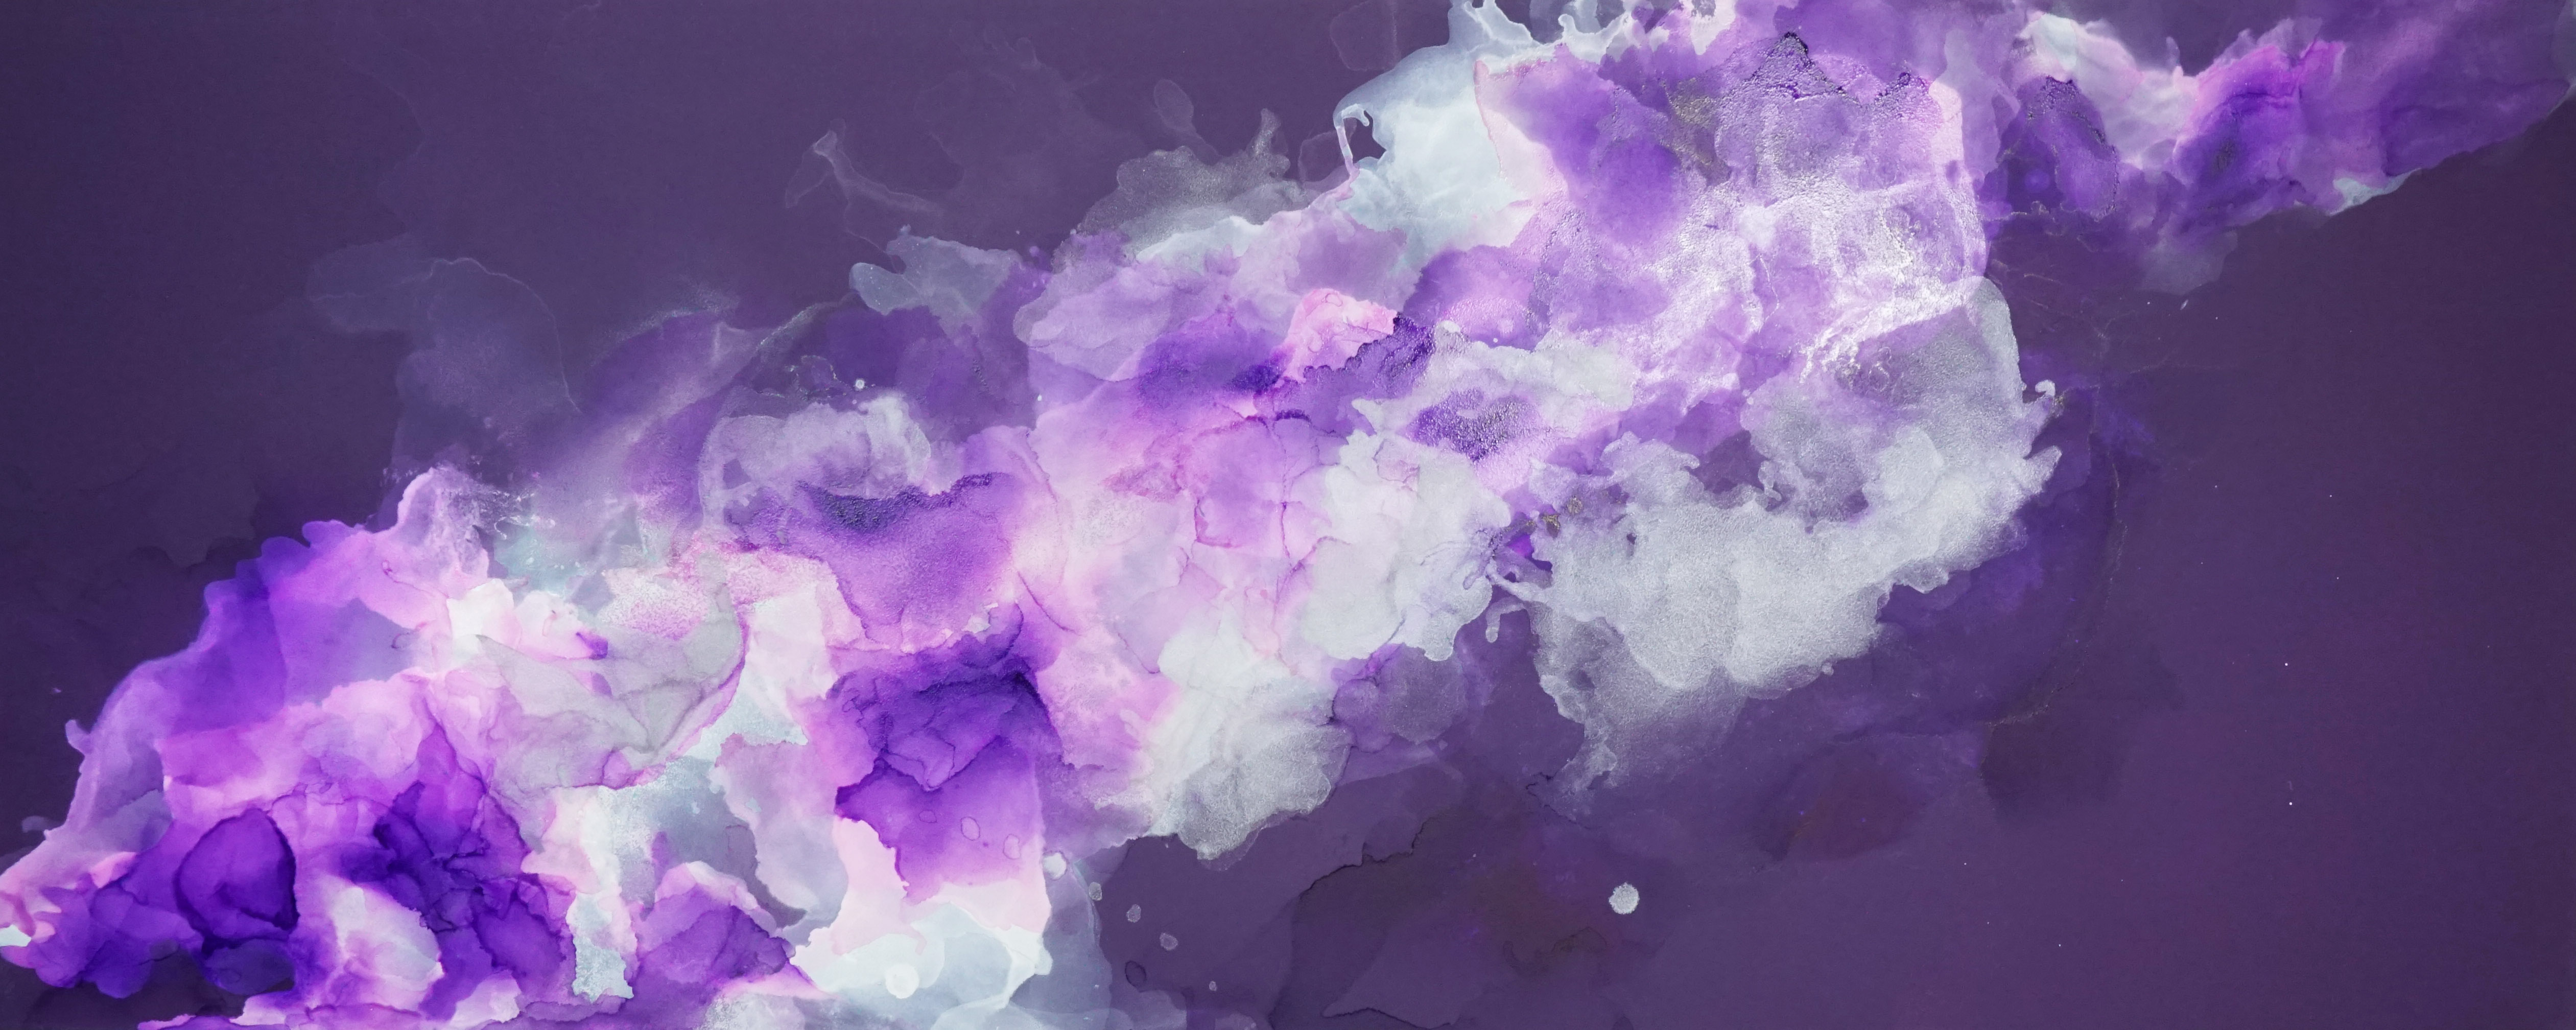 日月一隅-紫水晶